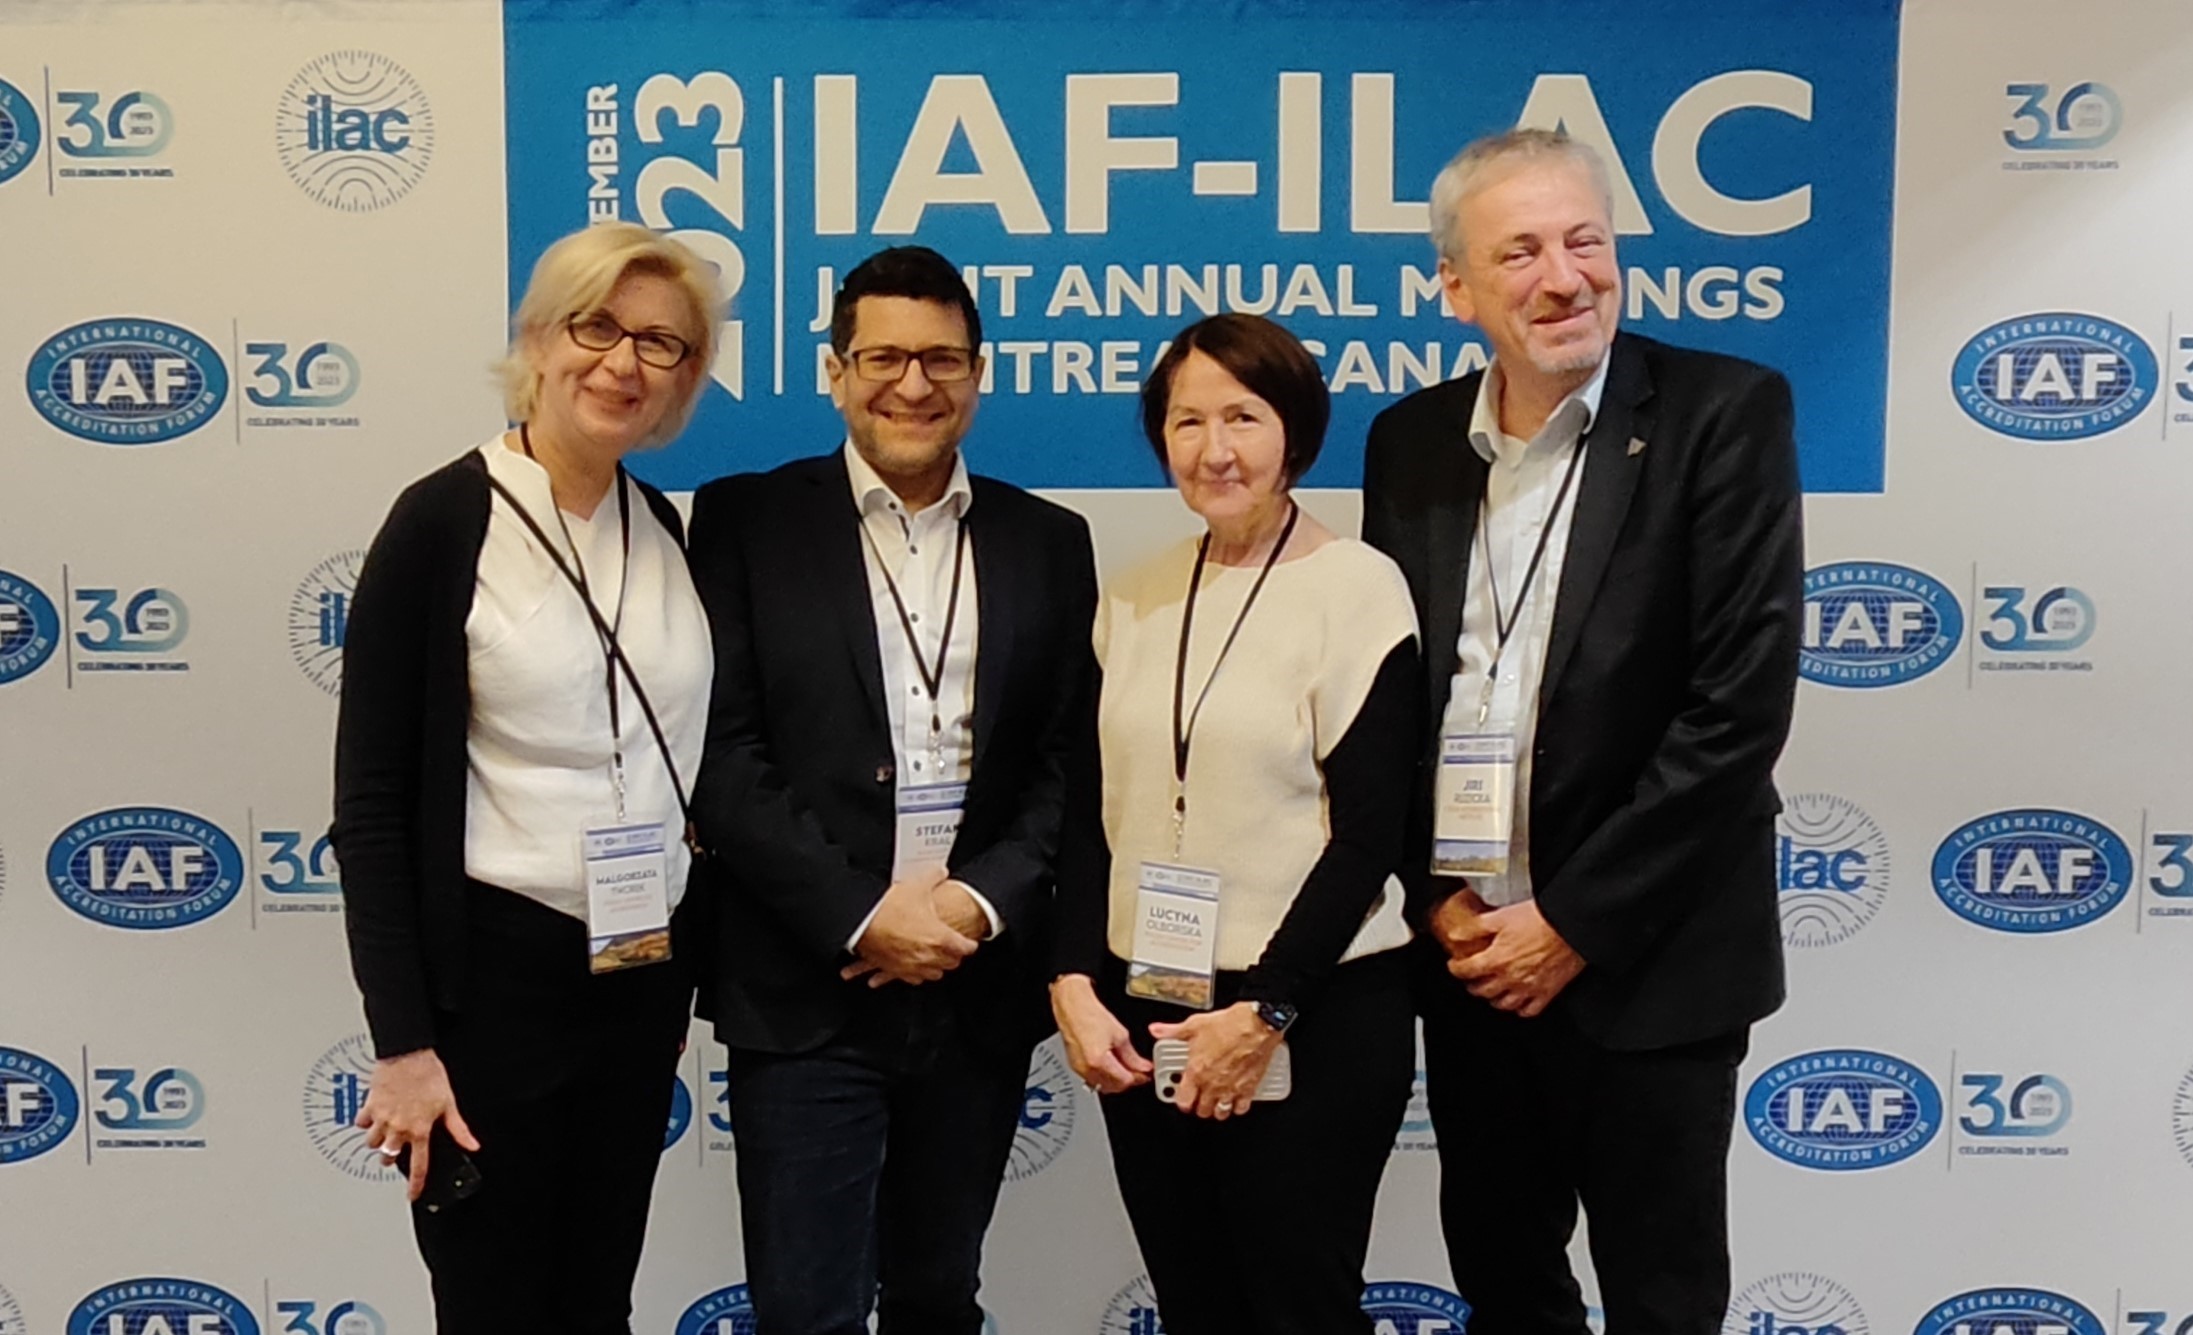 kliknite pre otvorenie článku o Spoločnom zasadnutí IAF-ILAC v Montreale, ktorého sa zúčastnil aj riaditeľ SNAS Štefan Král